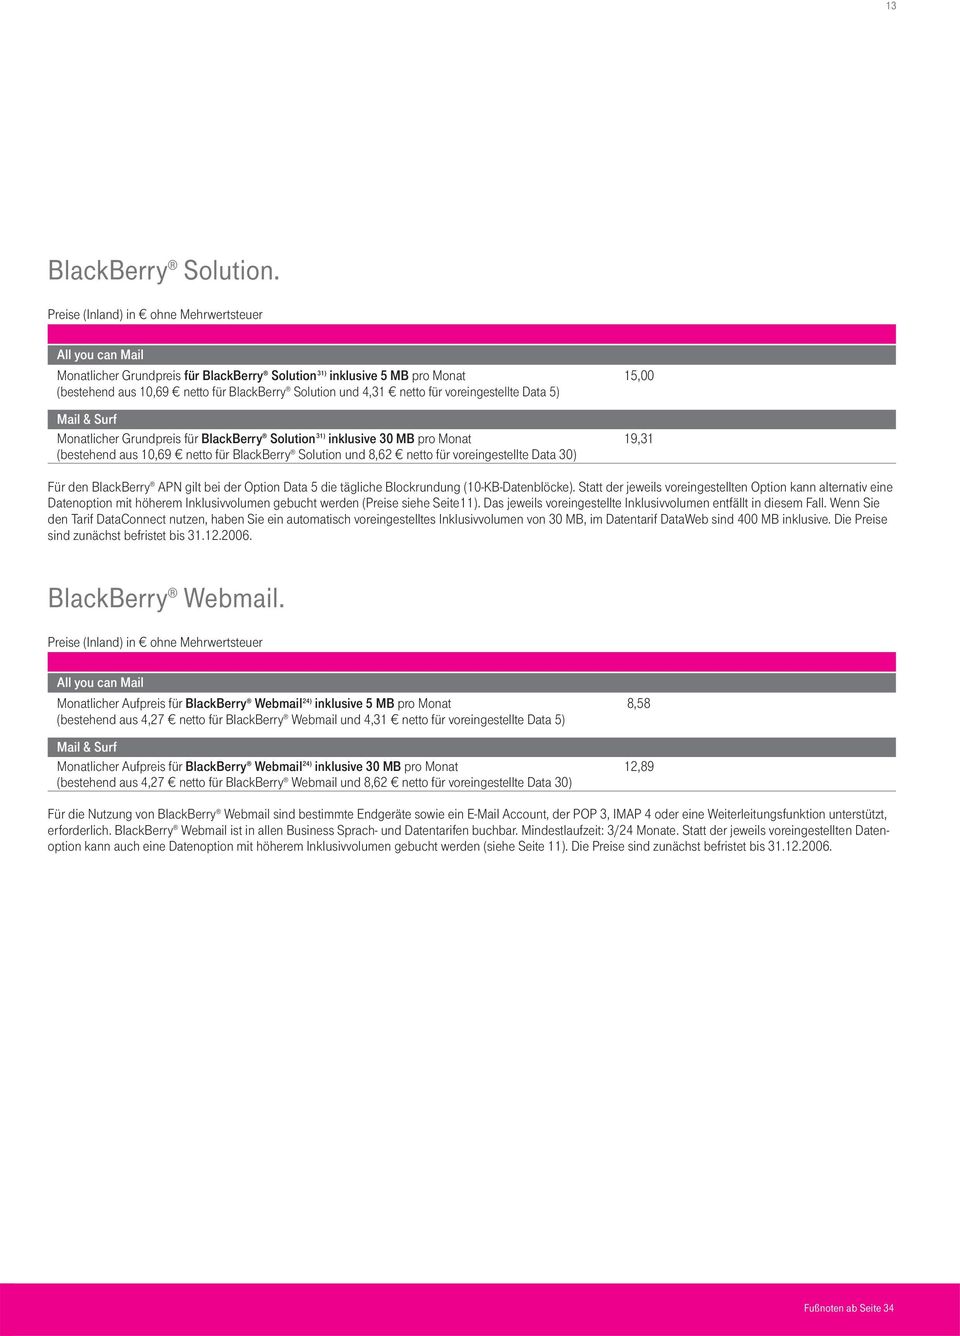 Surf Monatlicher Grundpreis für BlackBerry Solution 31) inklusive 30 MB pro Monat 19,31 (bestehend aus 10,69 netto für BlackBerry Solution und 8,62 netto für voreingestellte Data 30) Für den